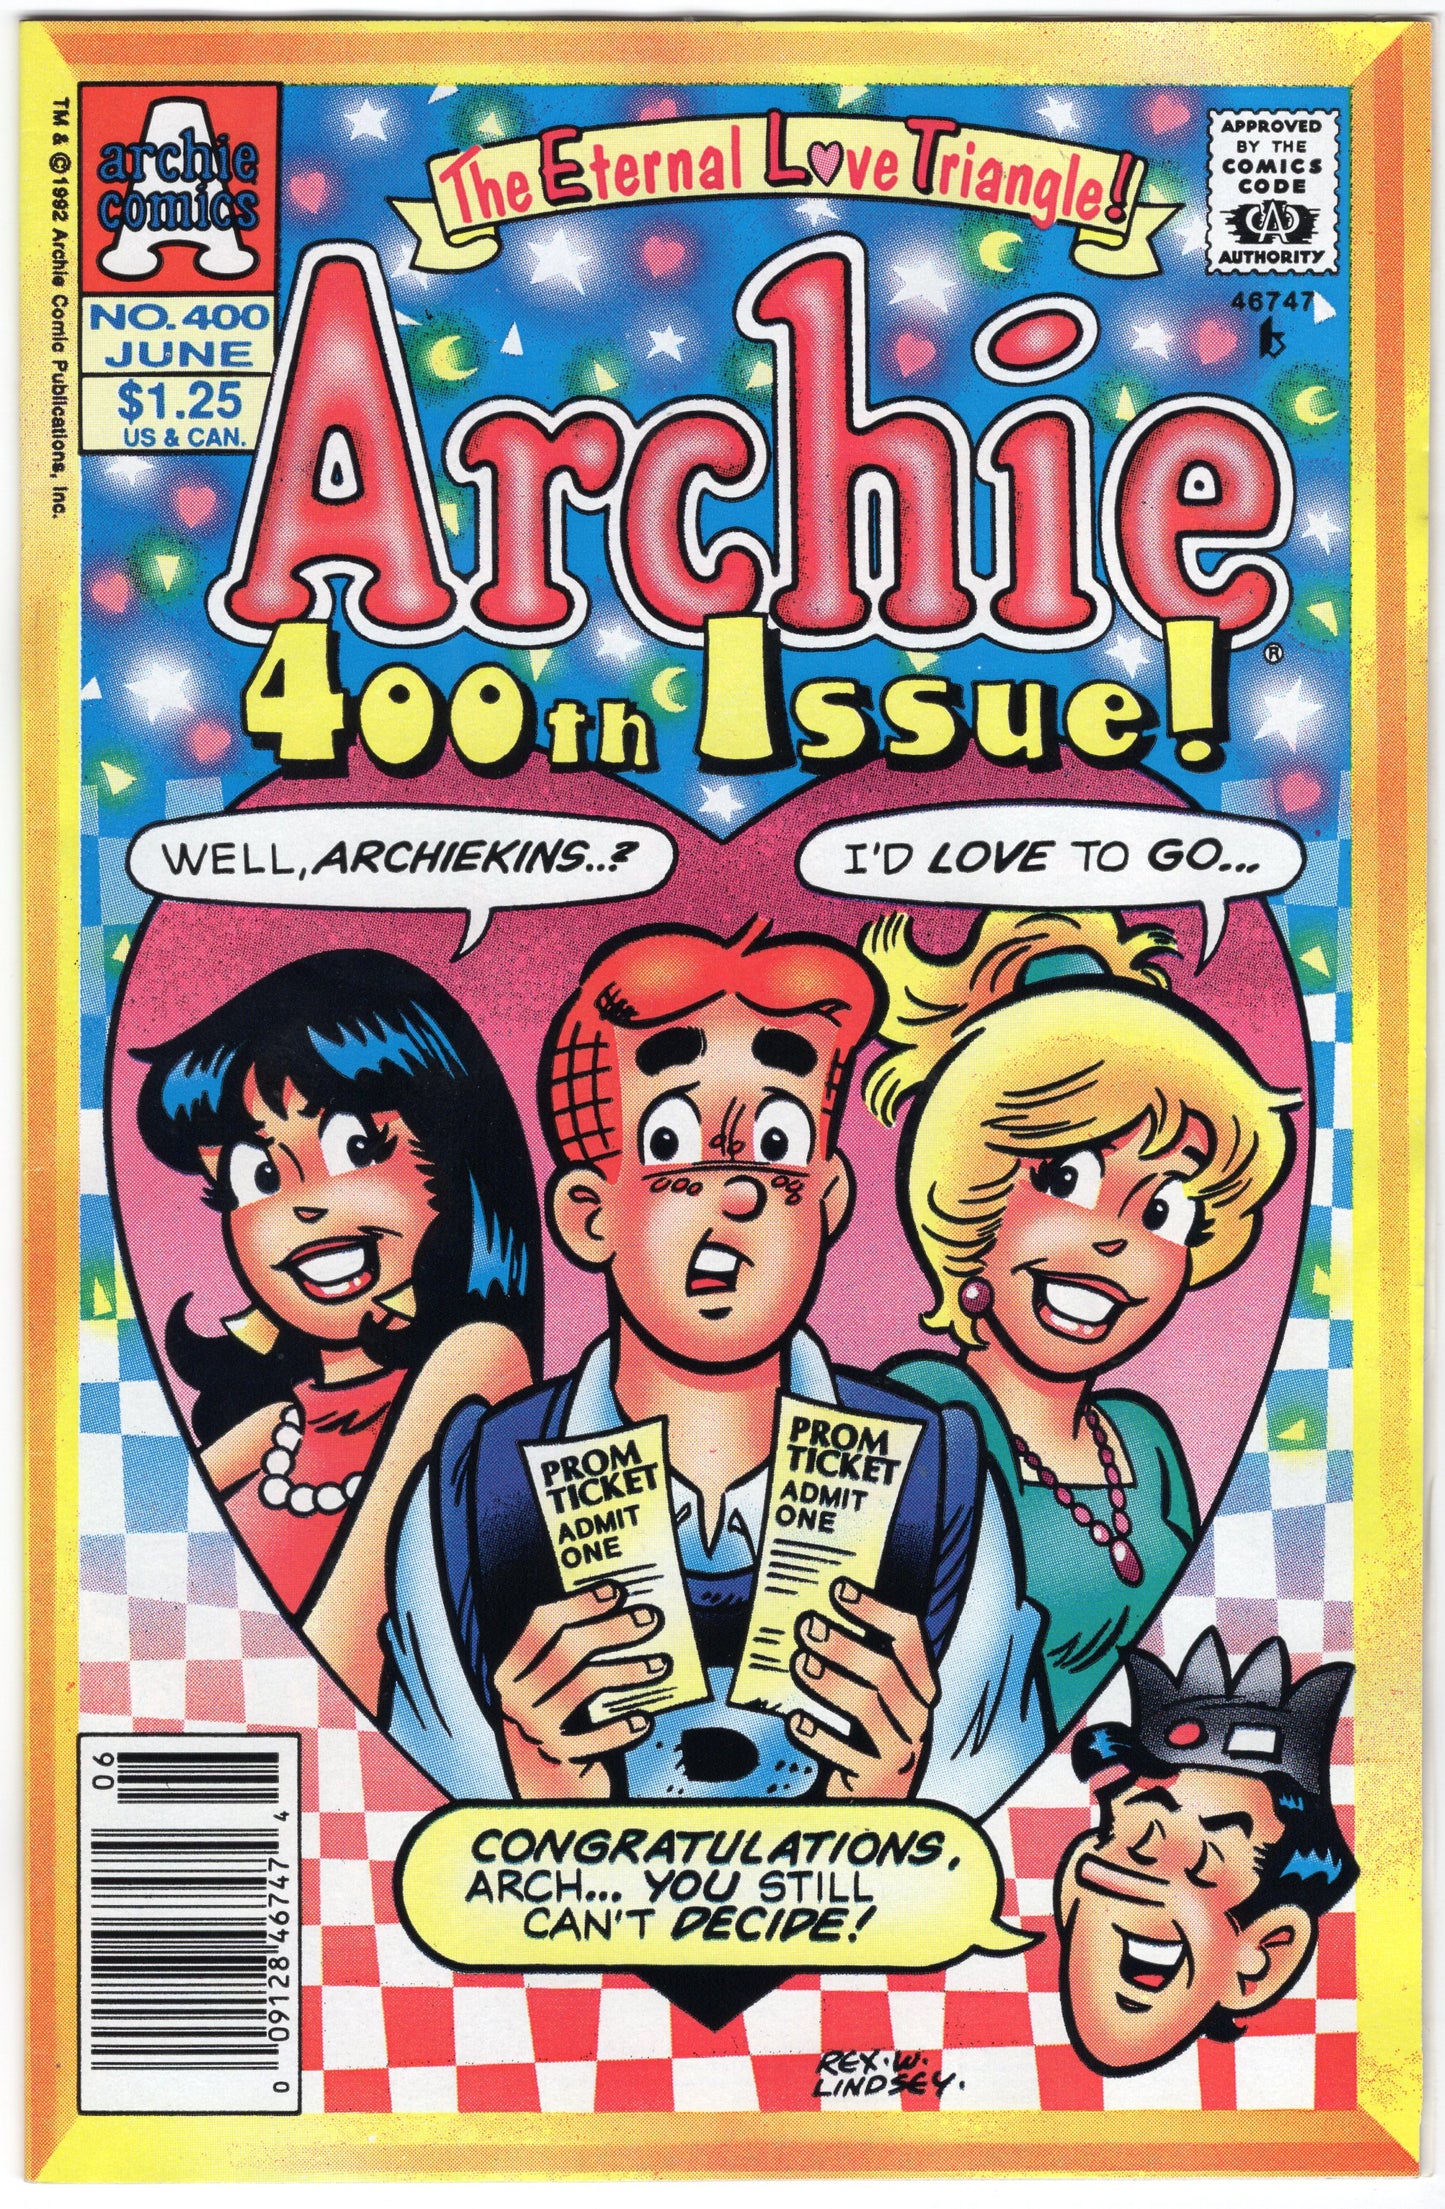 Archie - Issue #400 (June, 1992 - Archie Comics / Publications) FN+